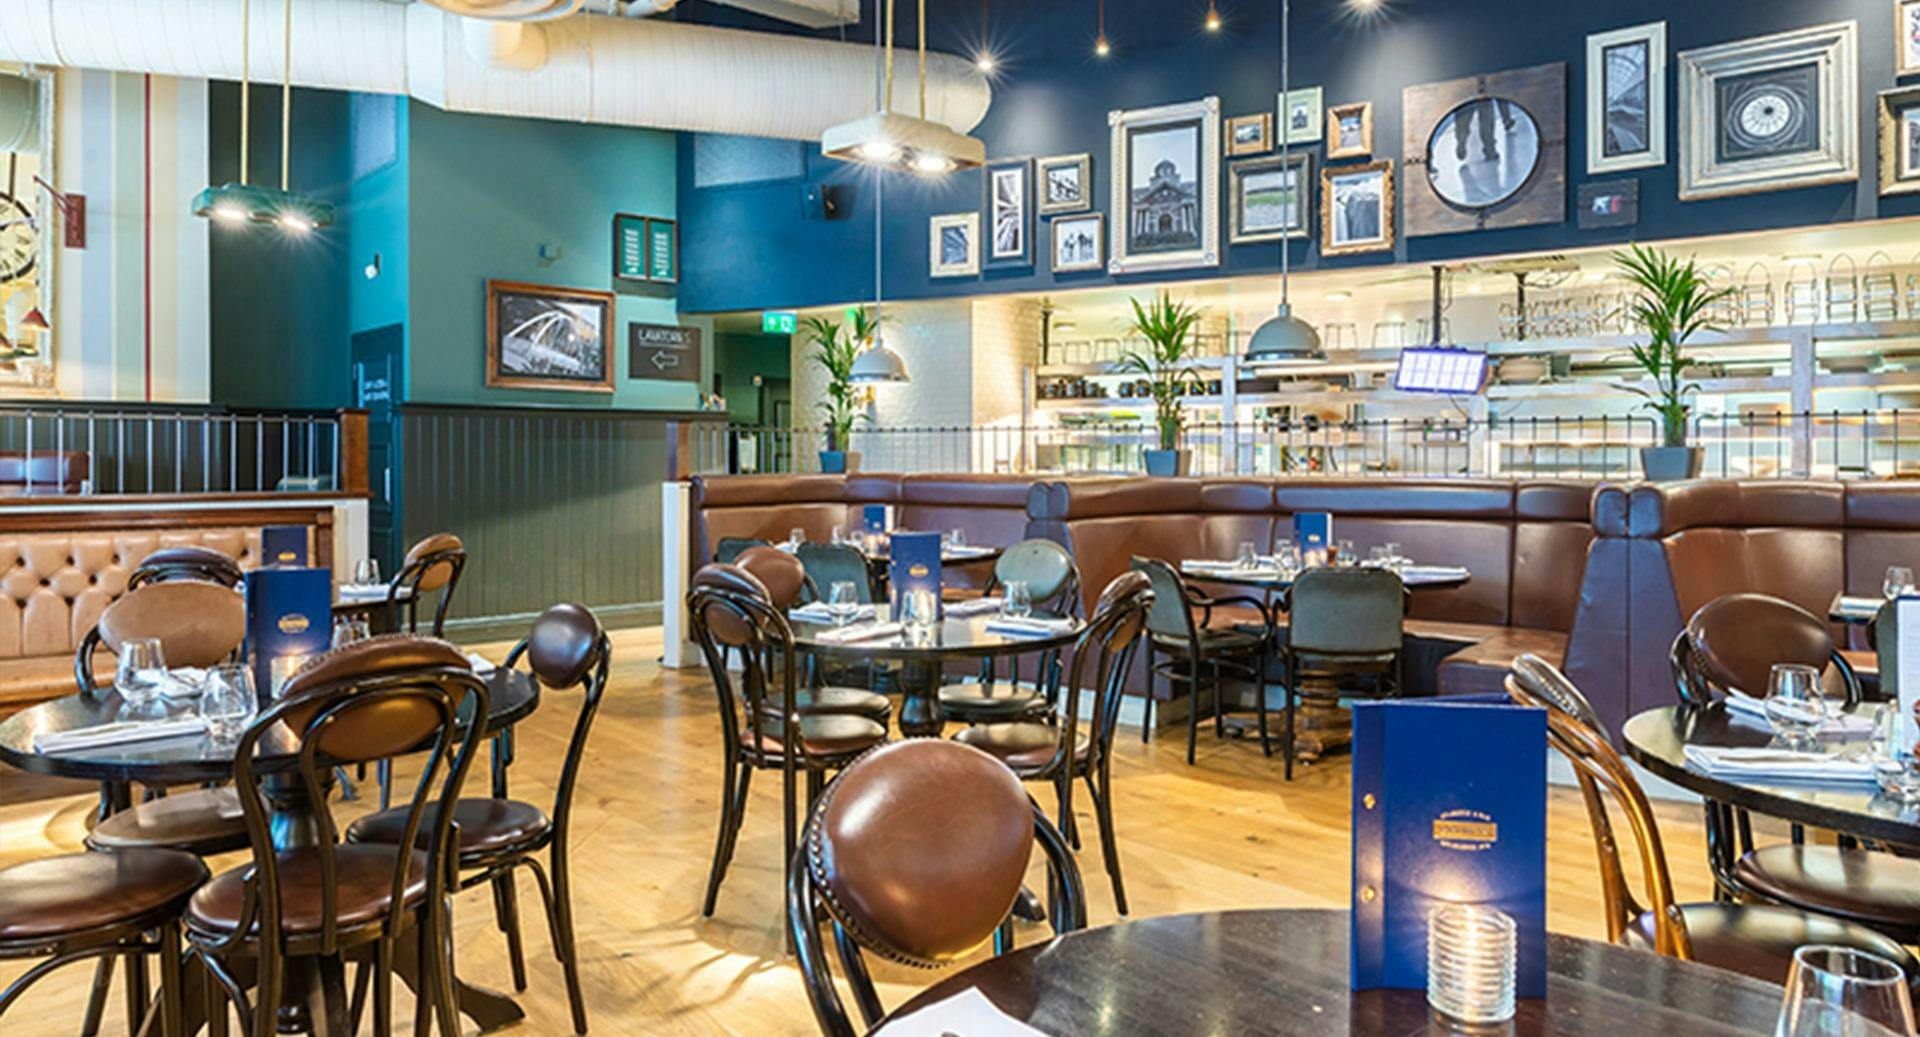 Photo of restaurant Browns Brasserie & Bar - Bluewater in Centre, Dartford